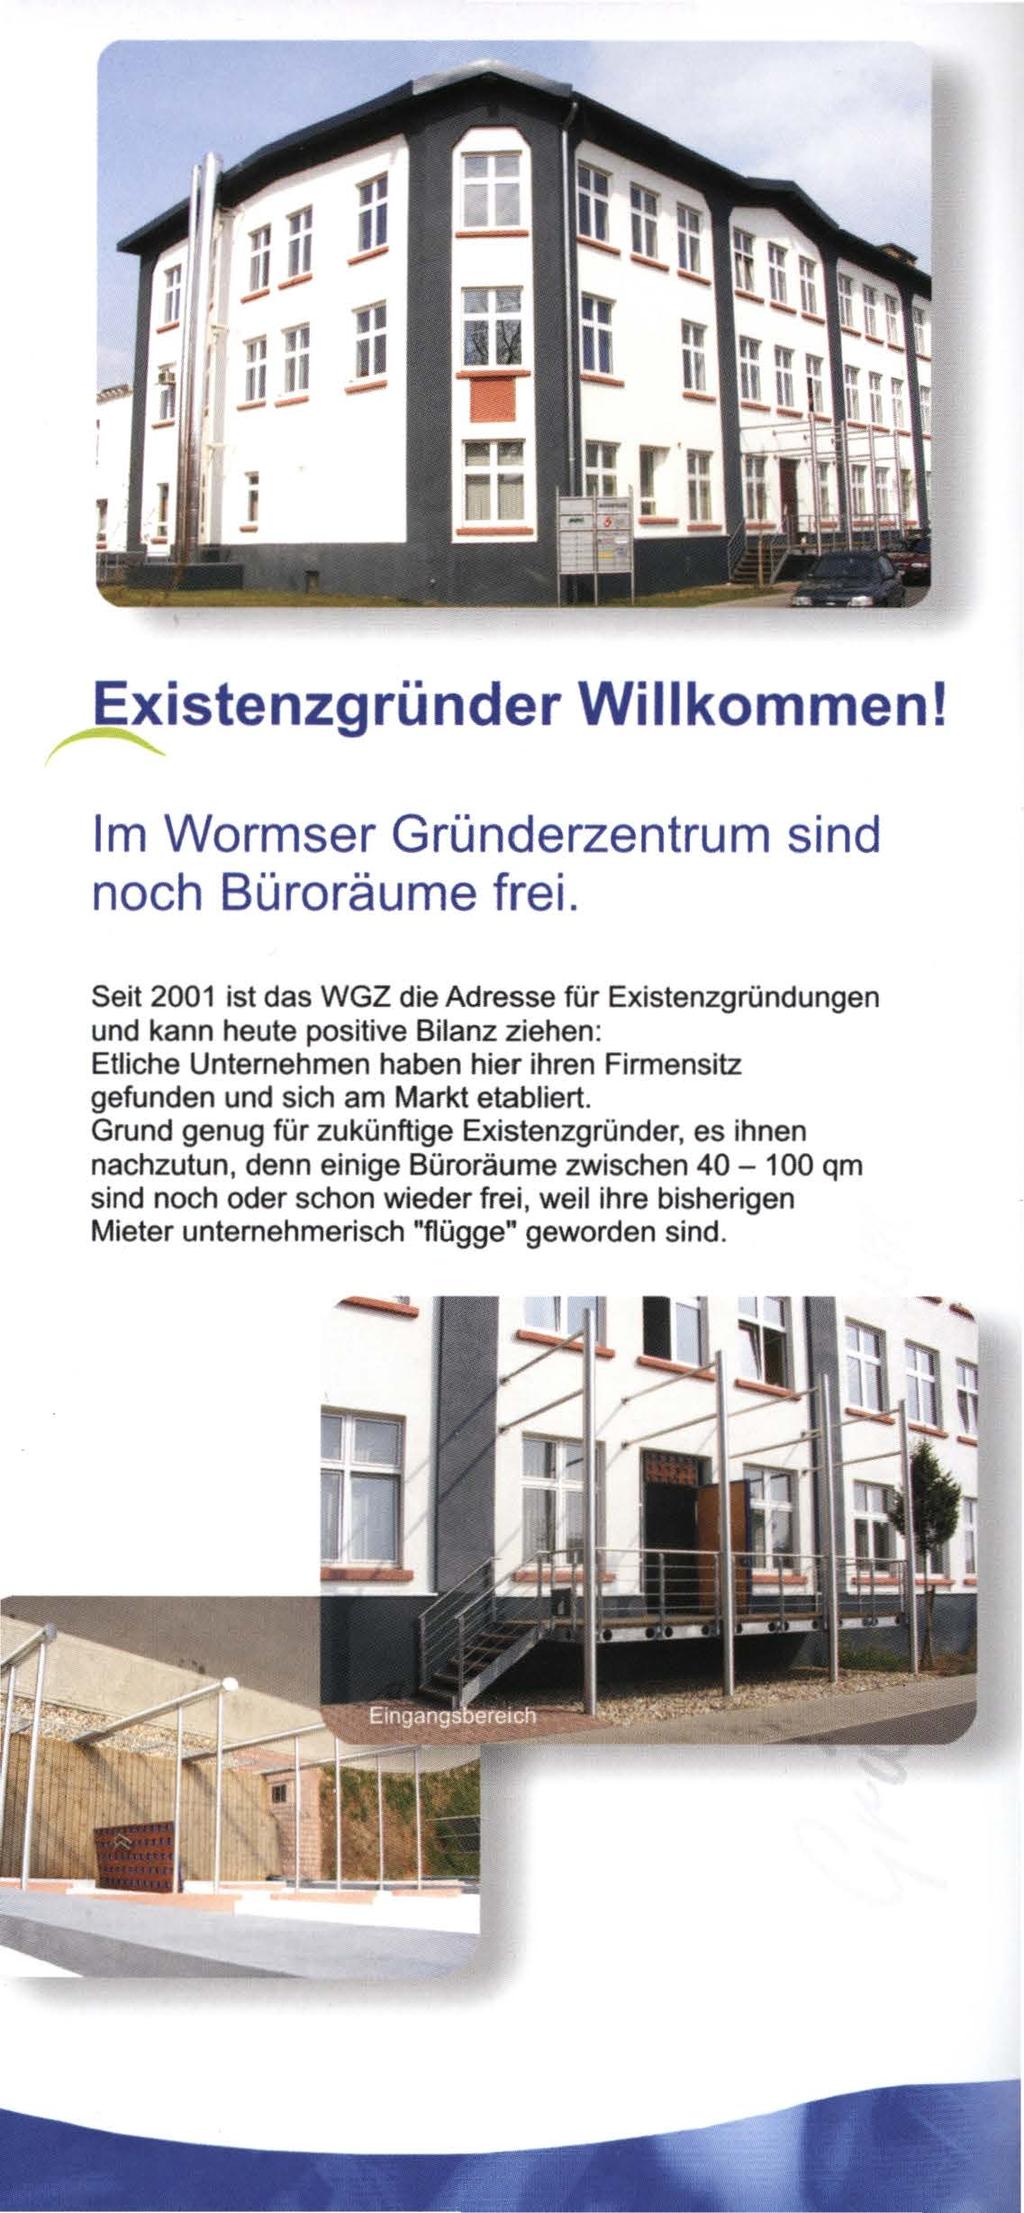 Existenzgründer Willkommen! Im Wormser Gründerzentrum sind noch Büroräume frei.